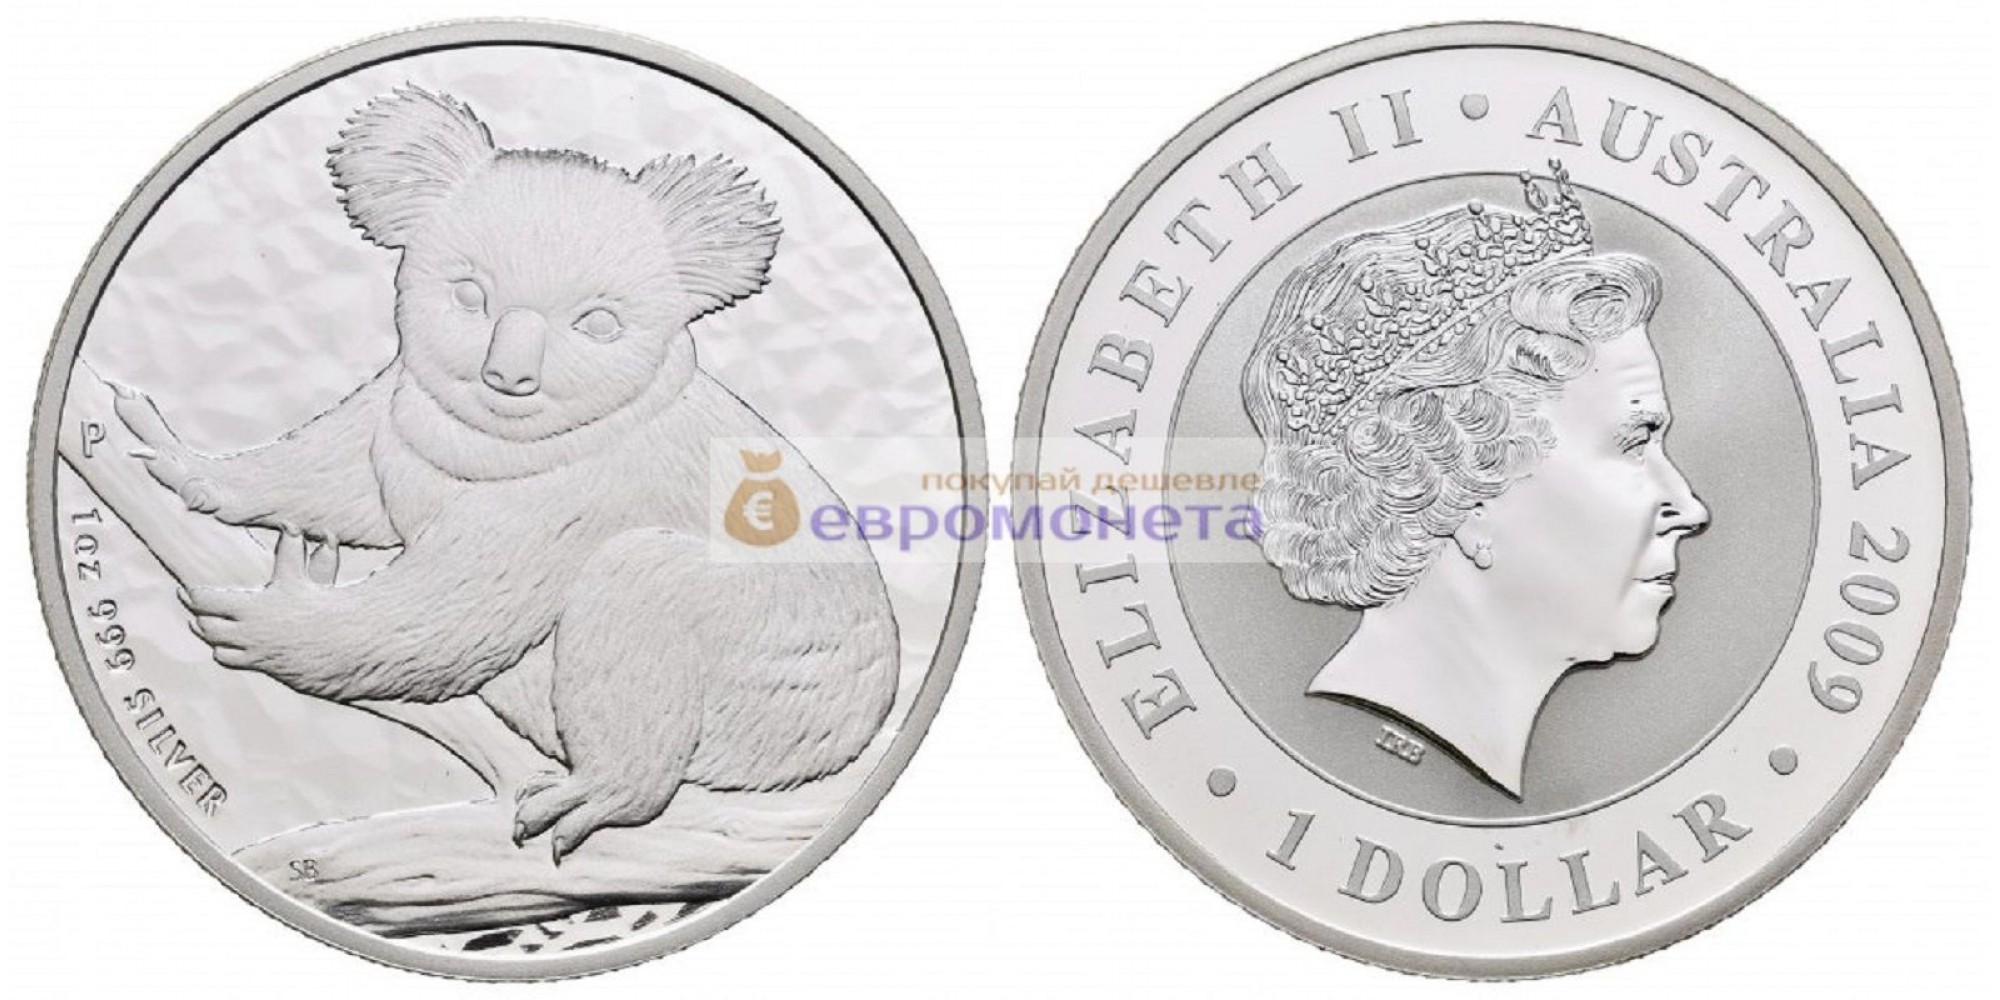 Австралия 1 доллар 2009 год. Австралийская Коала. Серебро. пруф / proof